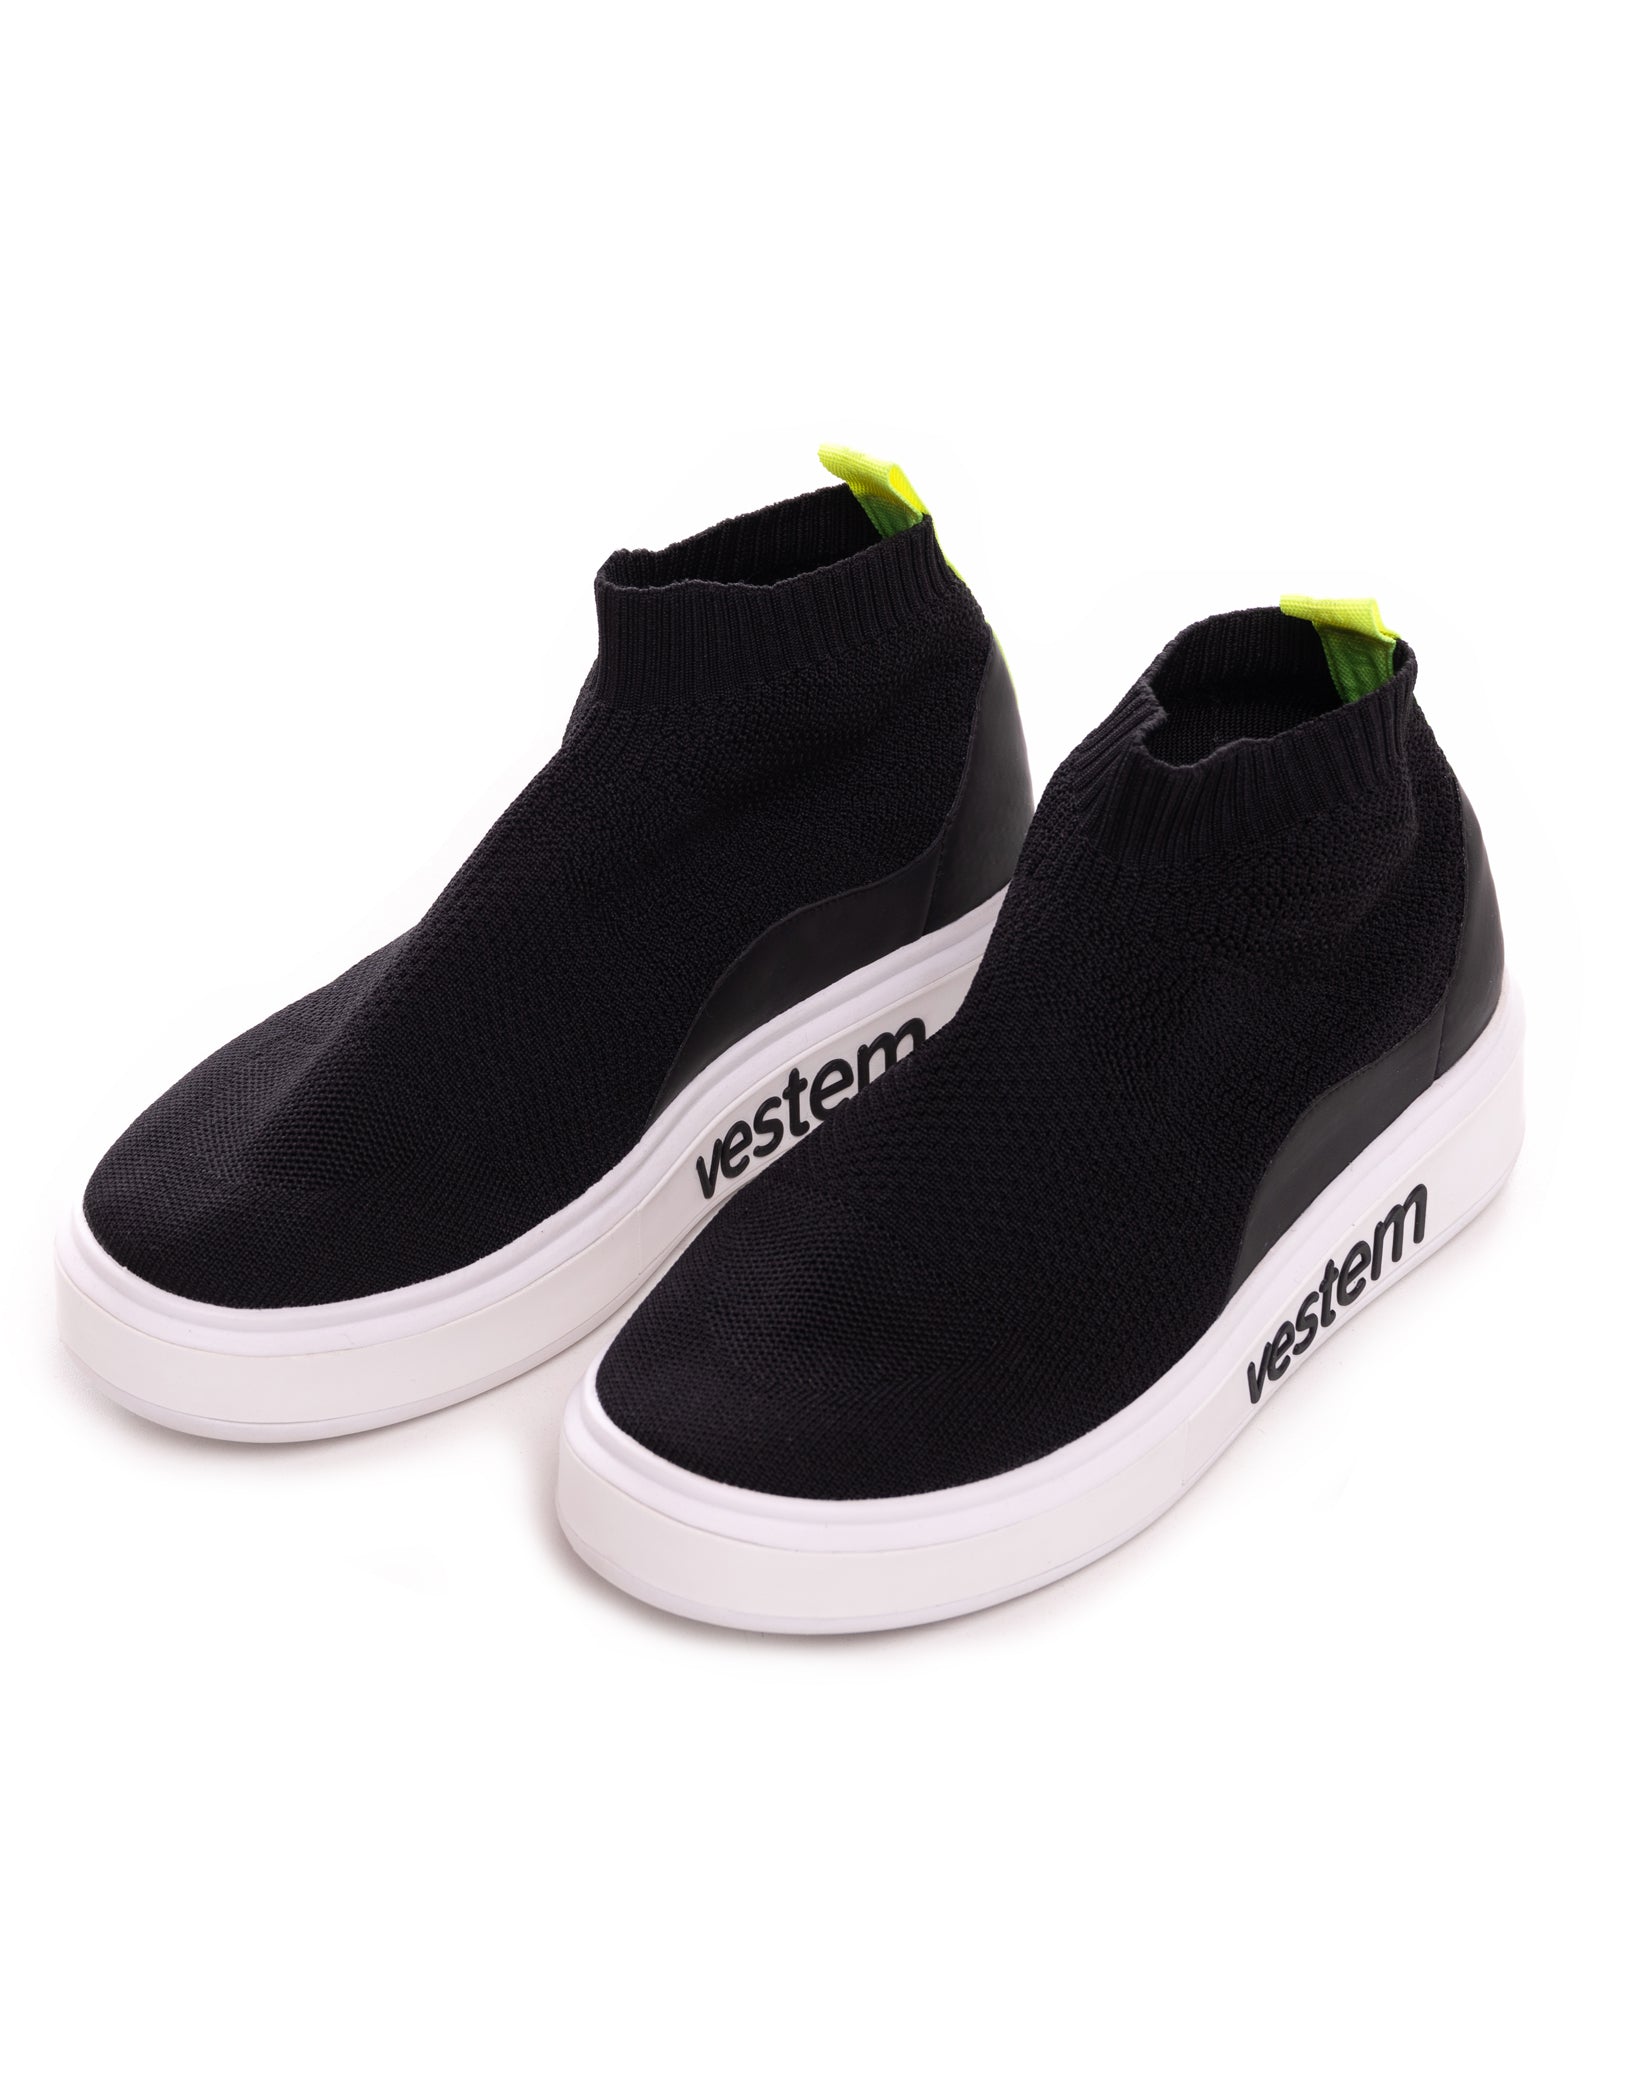 Vestem - Monet Black Sneakers - TE22C0002